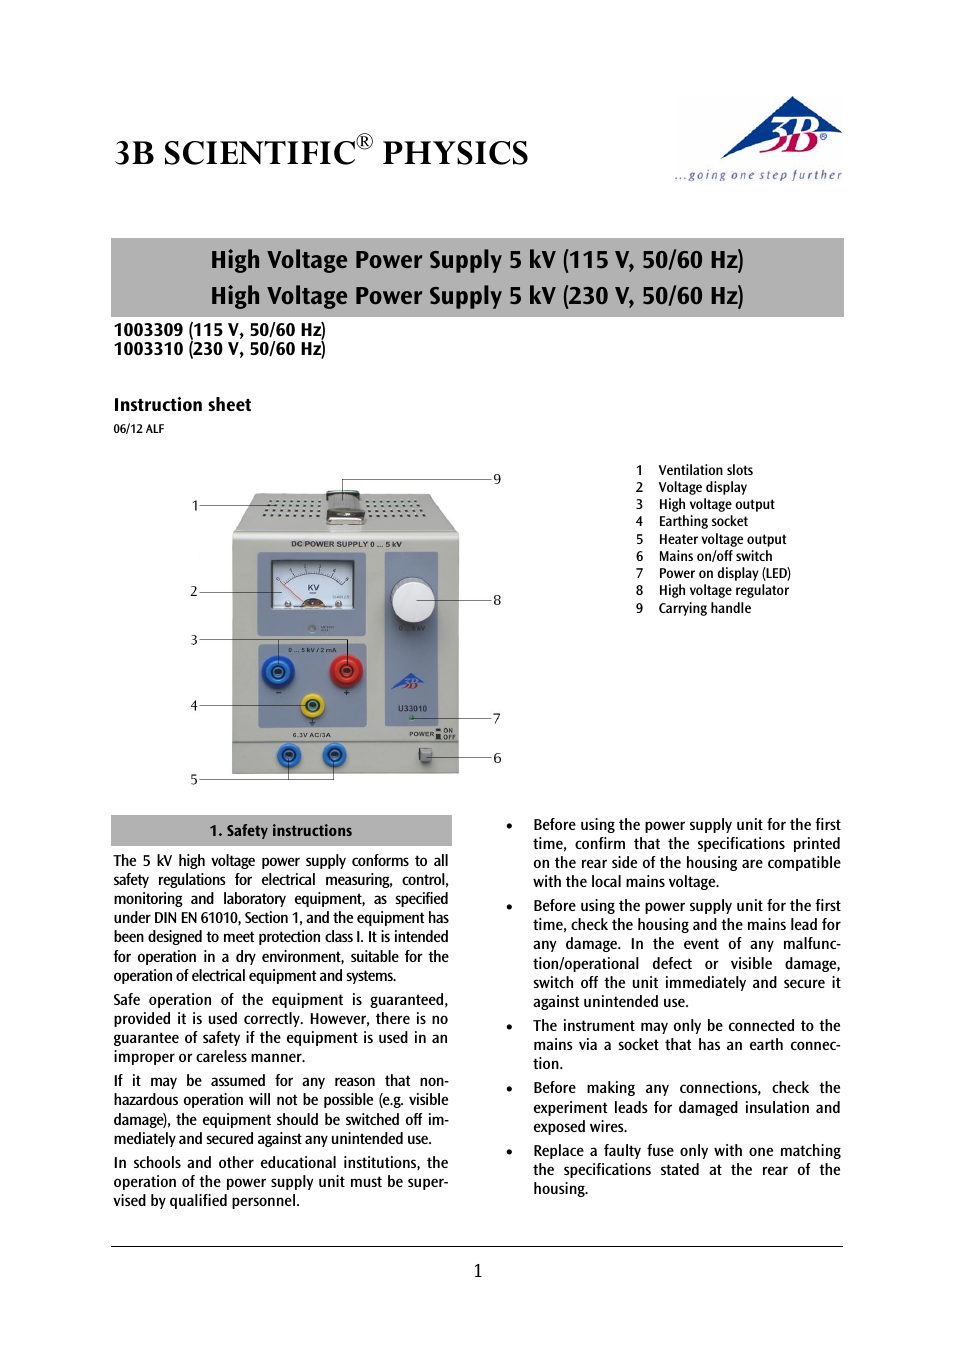 High Voltage Power Supply 5 kV (230 V, 50__60 Hz)